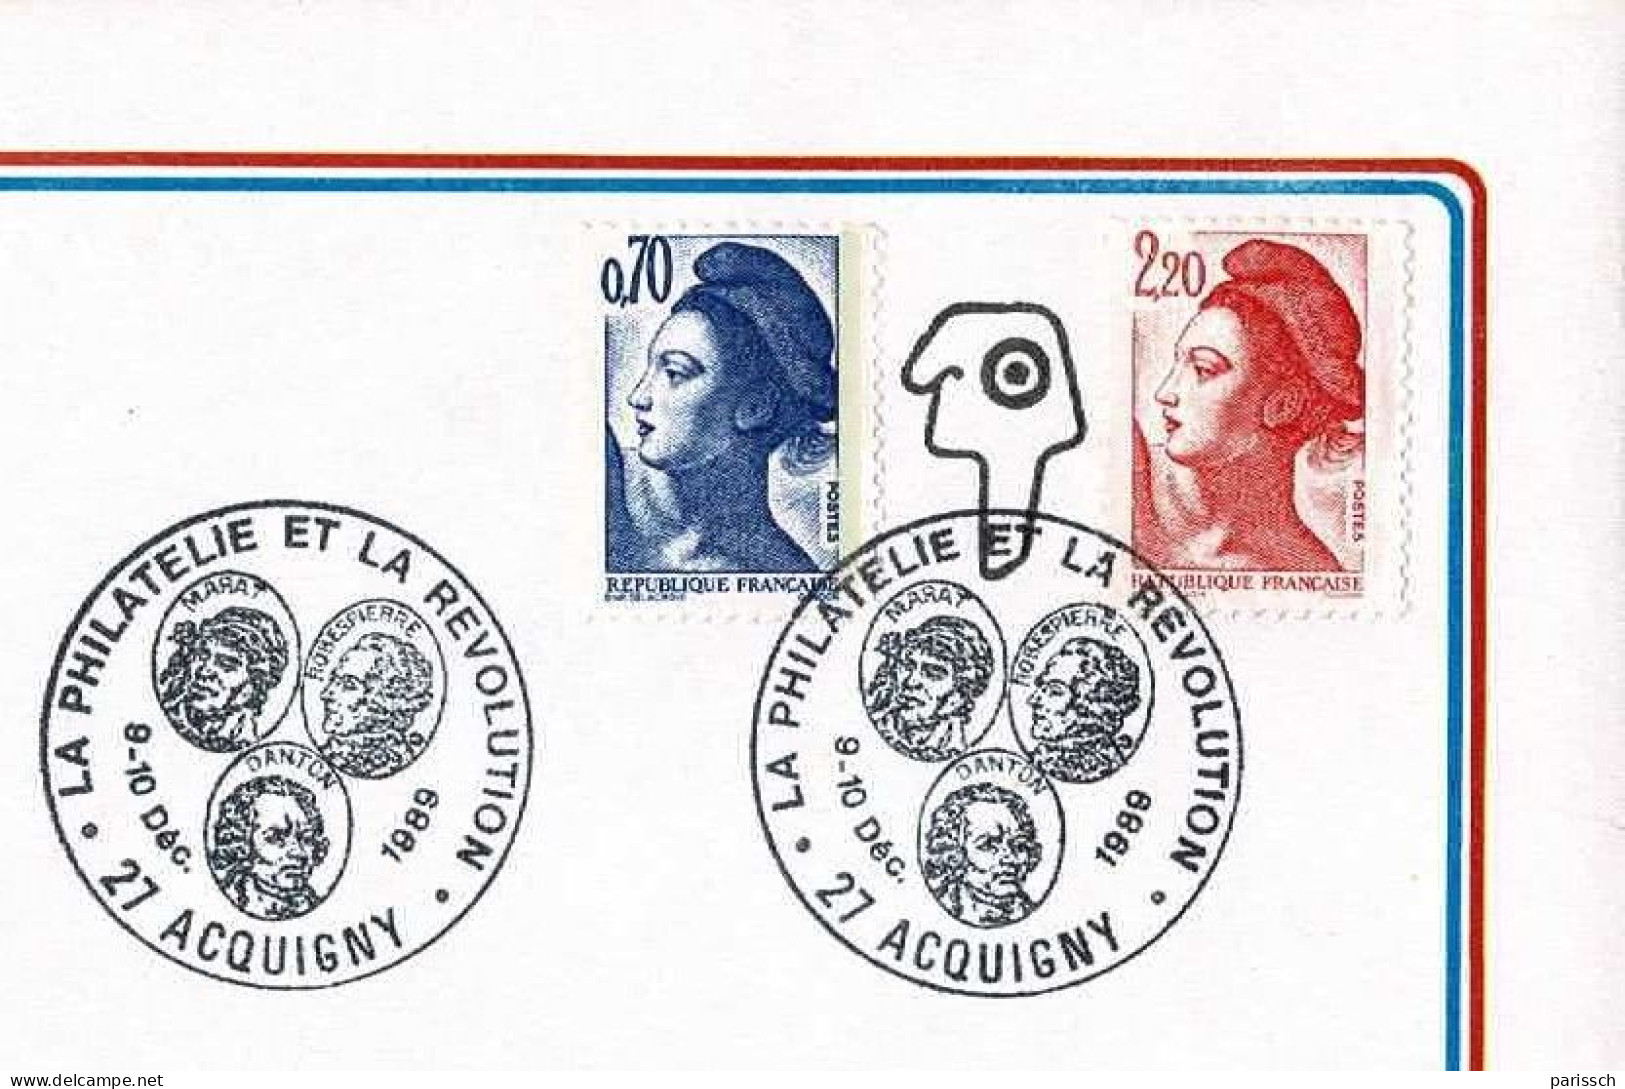 Enveloppe Bicentenaire De La Révolution - 1989 - ACQUIGNY - French Revolution